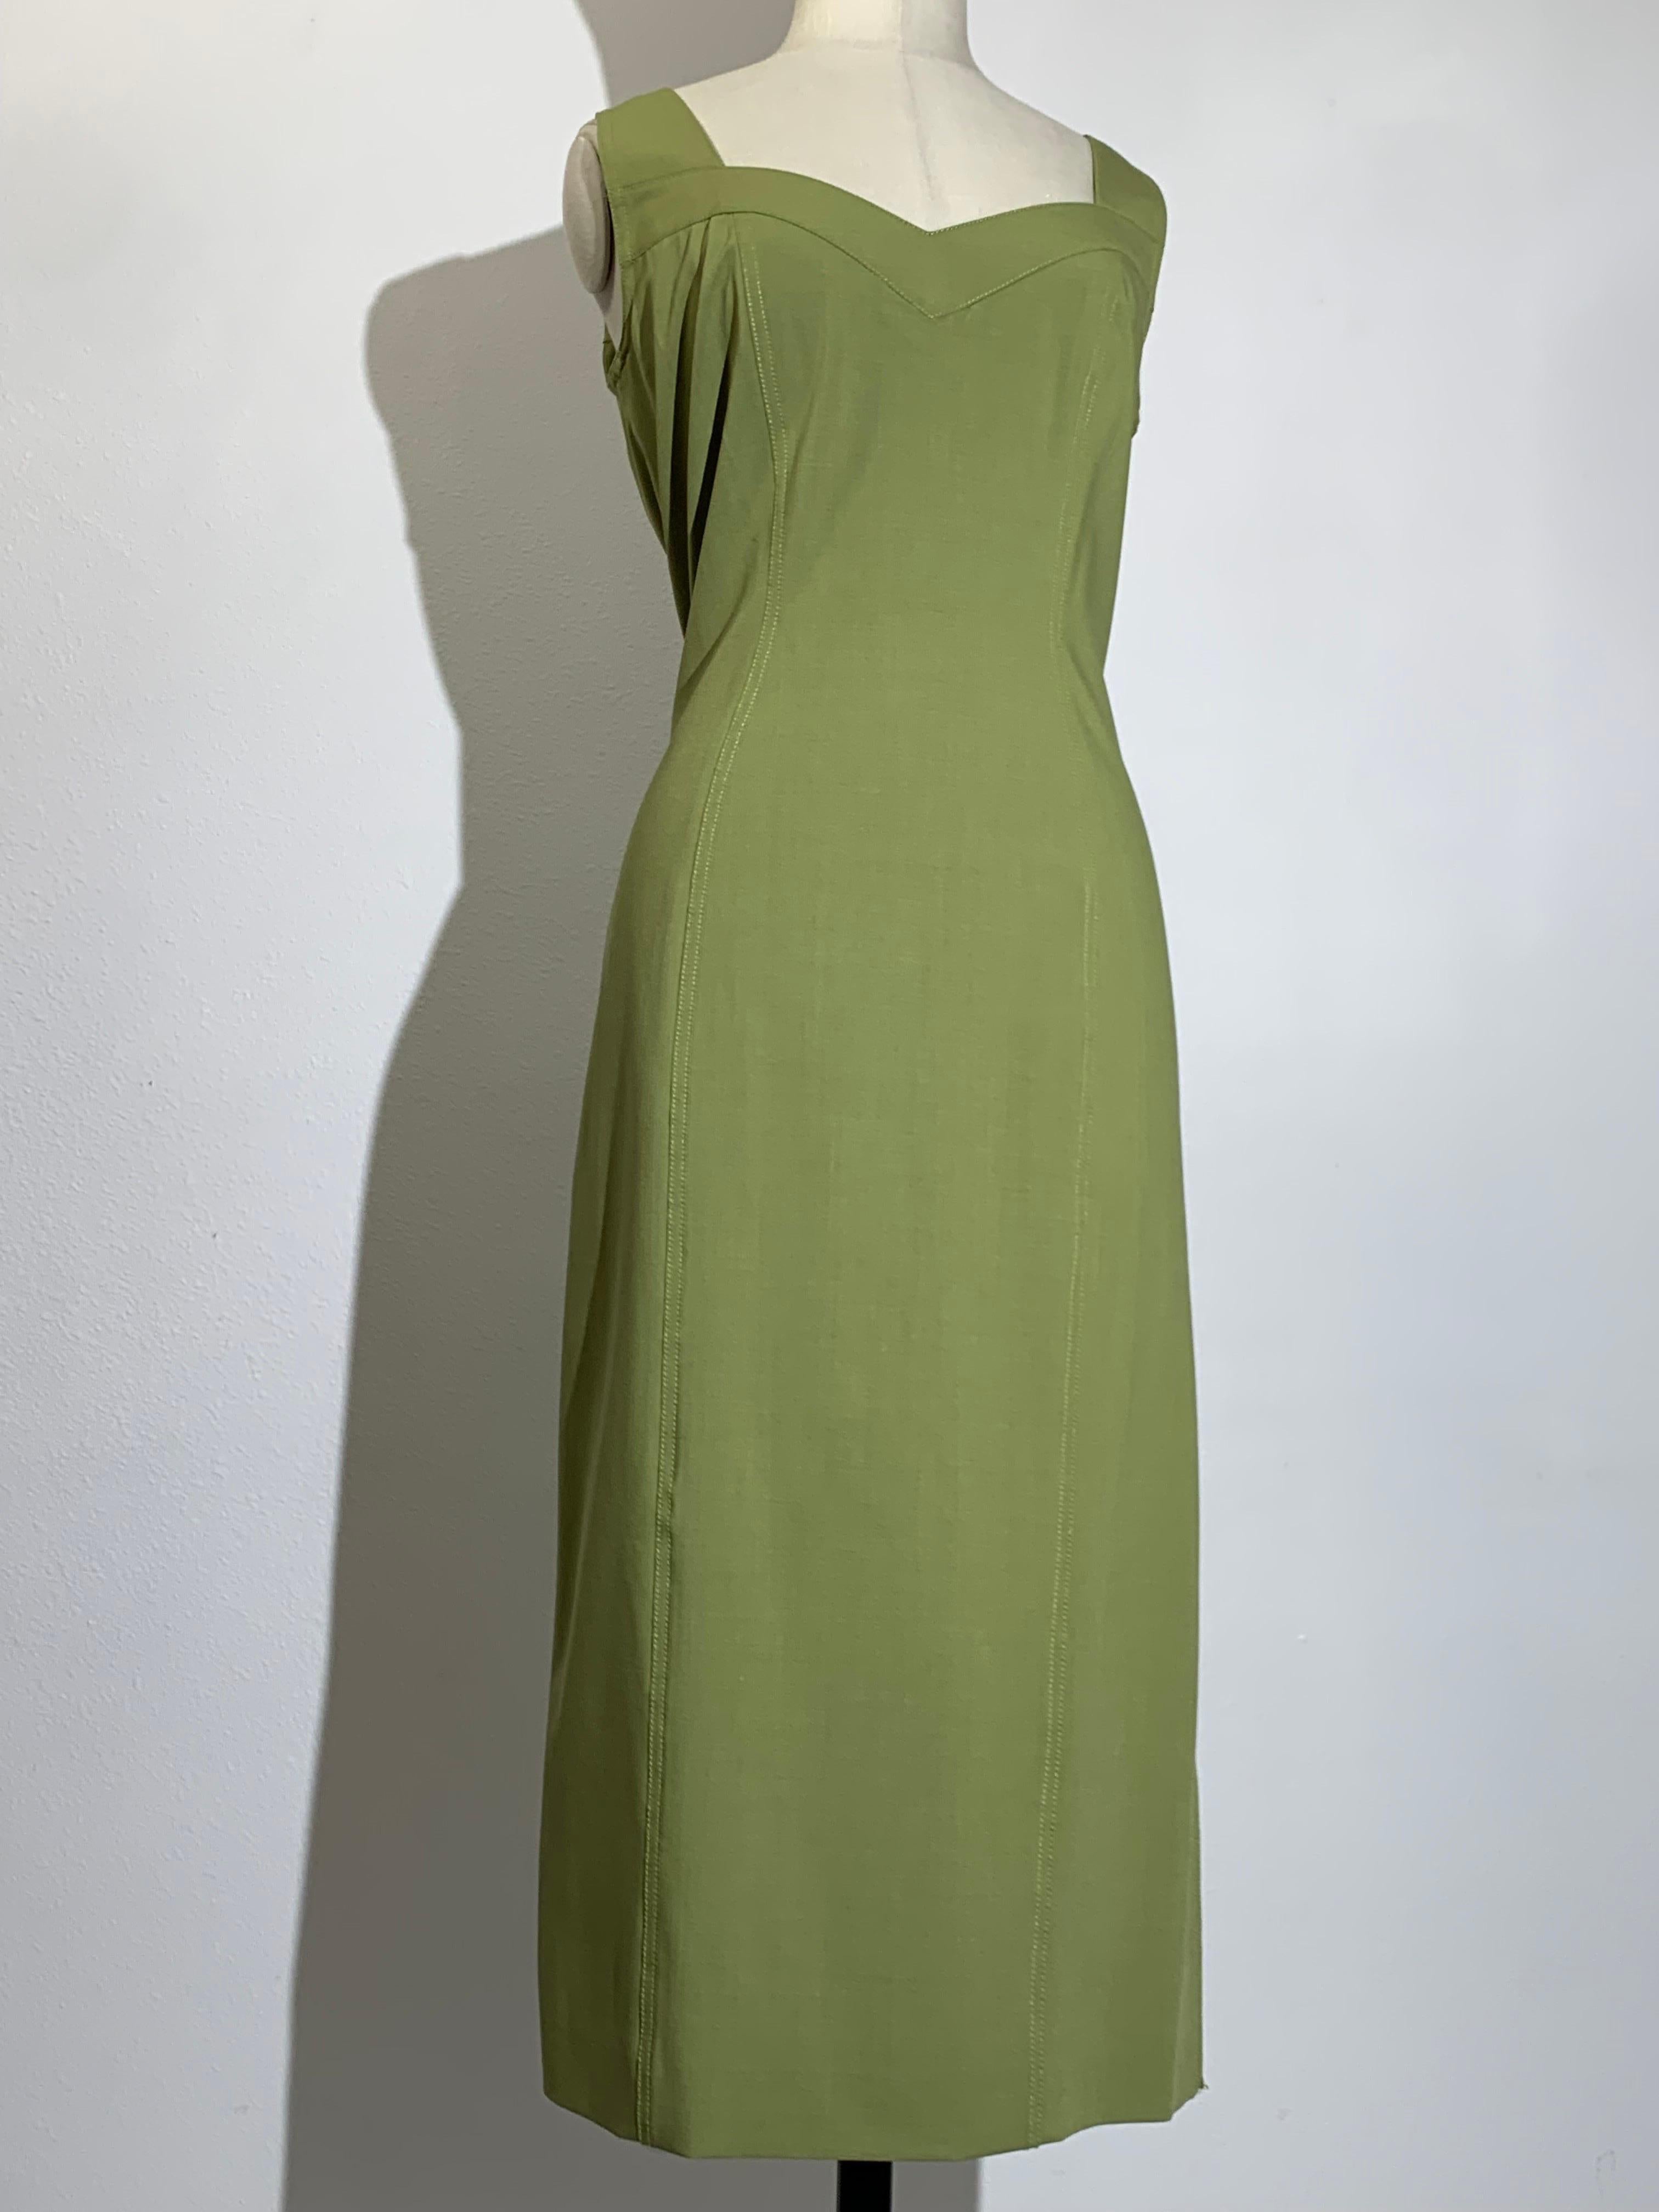 1990 John Galliano Sage Green Lightweight Wool Stretch Sheath Dress :  Robe d'été en laine, sans manches, avec décolleté en cœur sur le devant et dans le dos. Entièrement doublé en charmeuse de soie. Fermeture éclair au dos. Convient à une taille 12